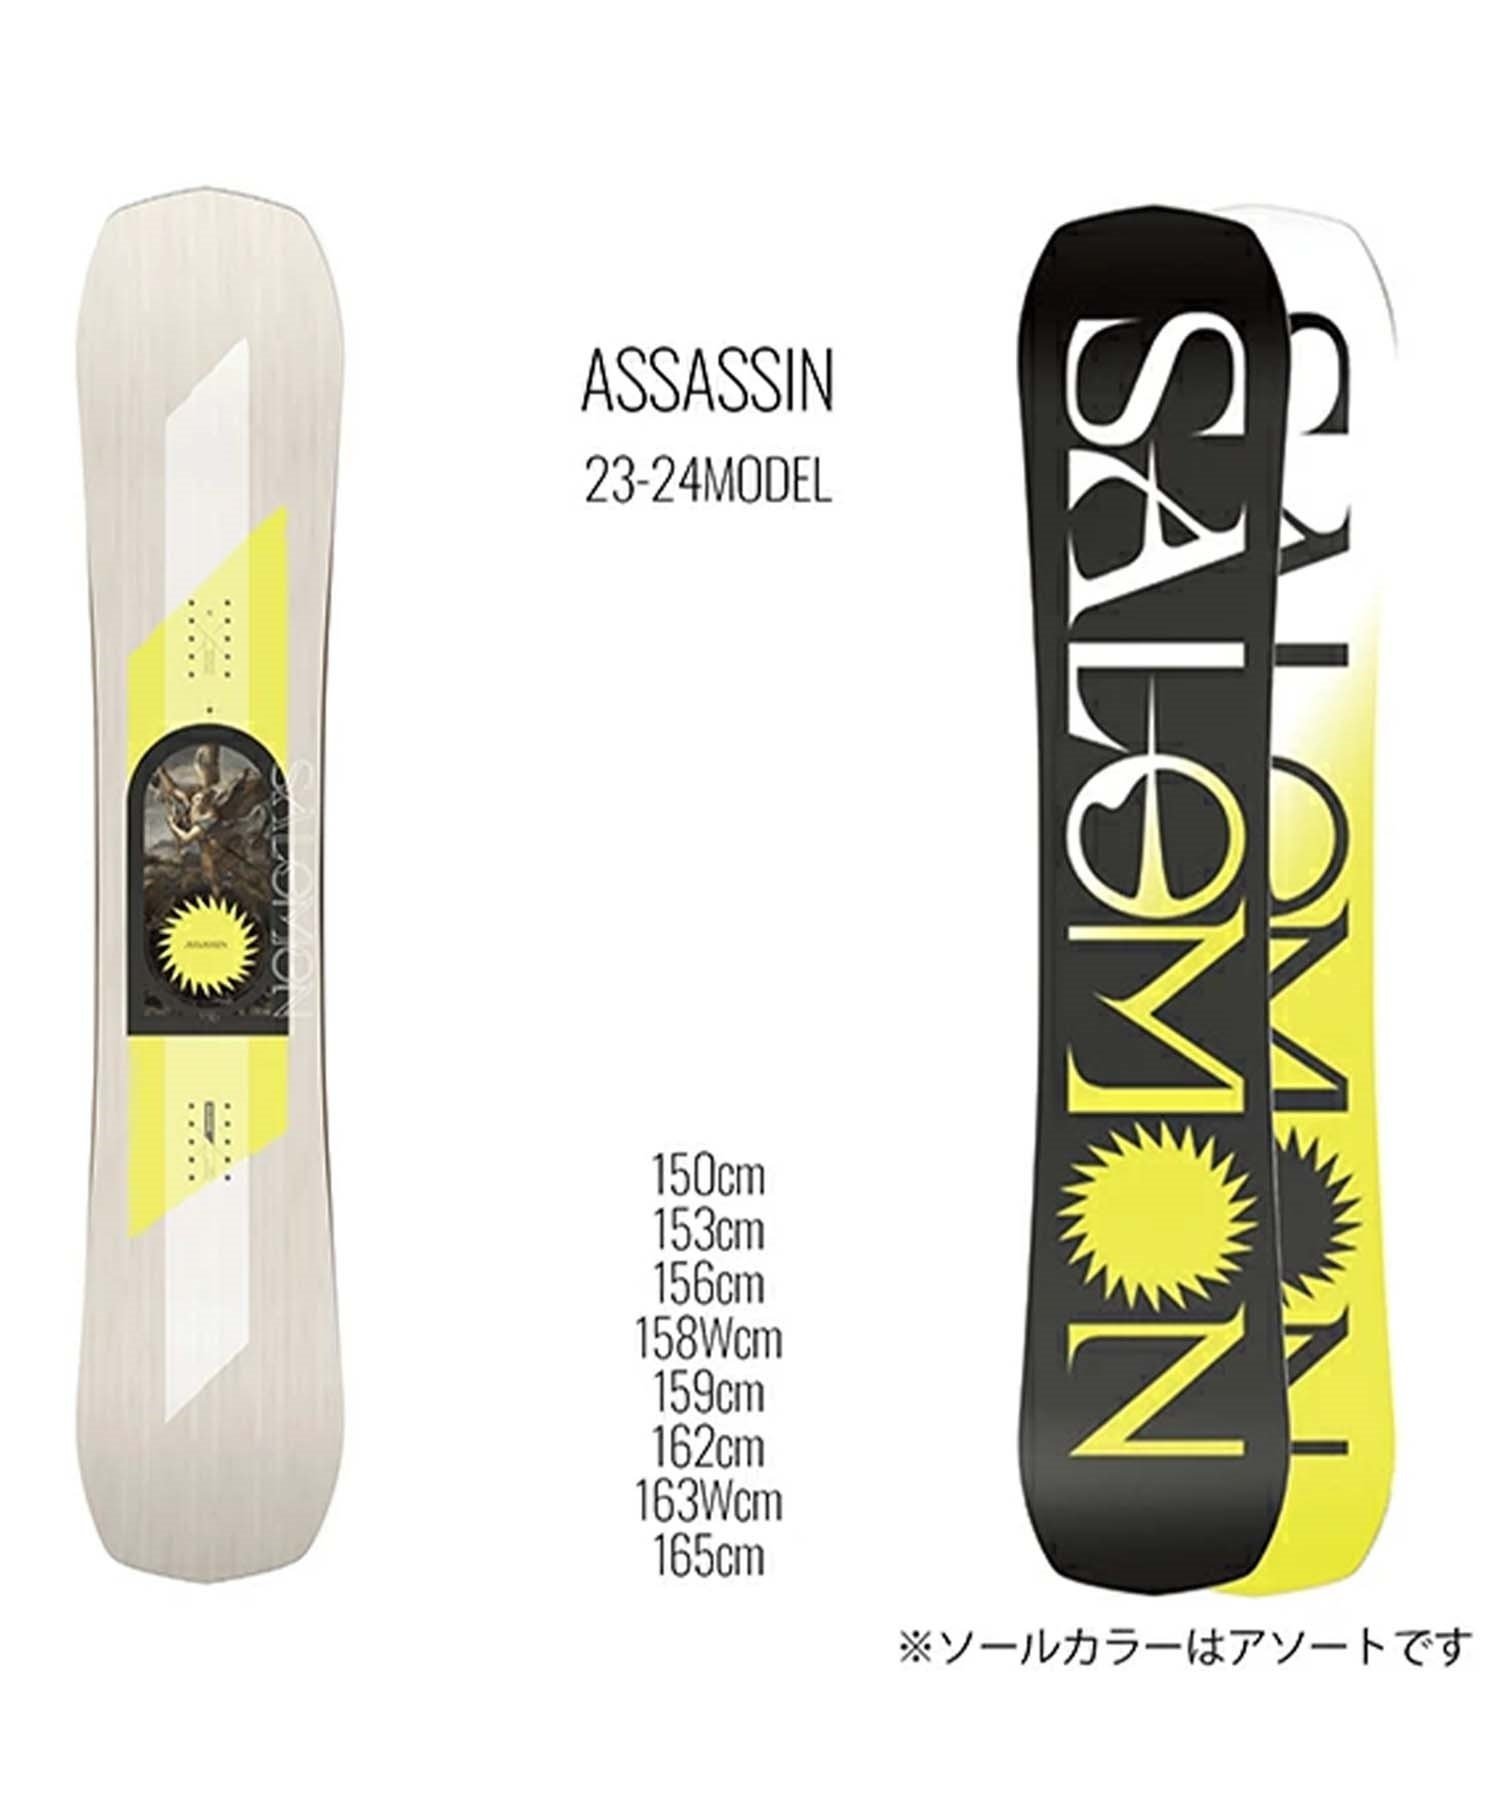 スノーボード 板 メンズ SALOMON サロモン ASSASSIN 23-24モデル ムラサキスポーツ KK C2(ASSASSIN-150cm)